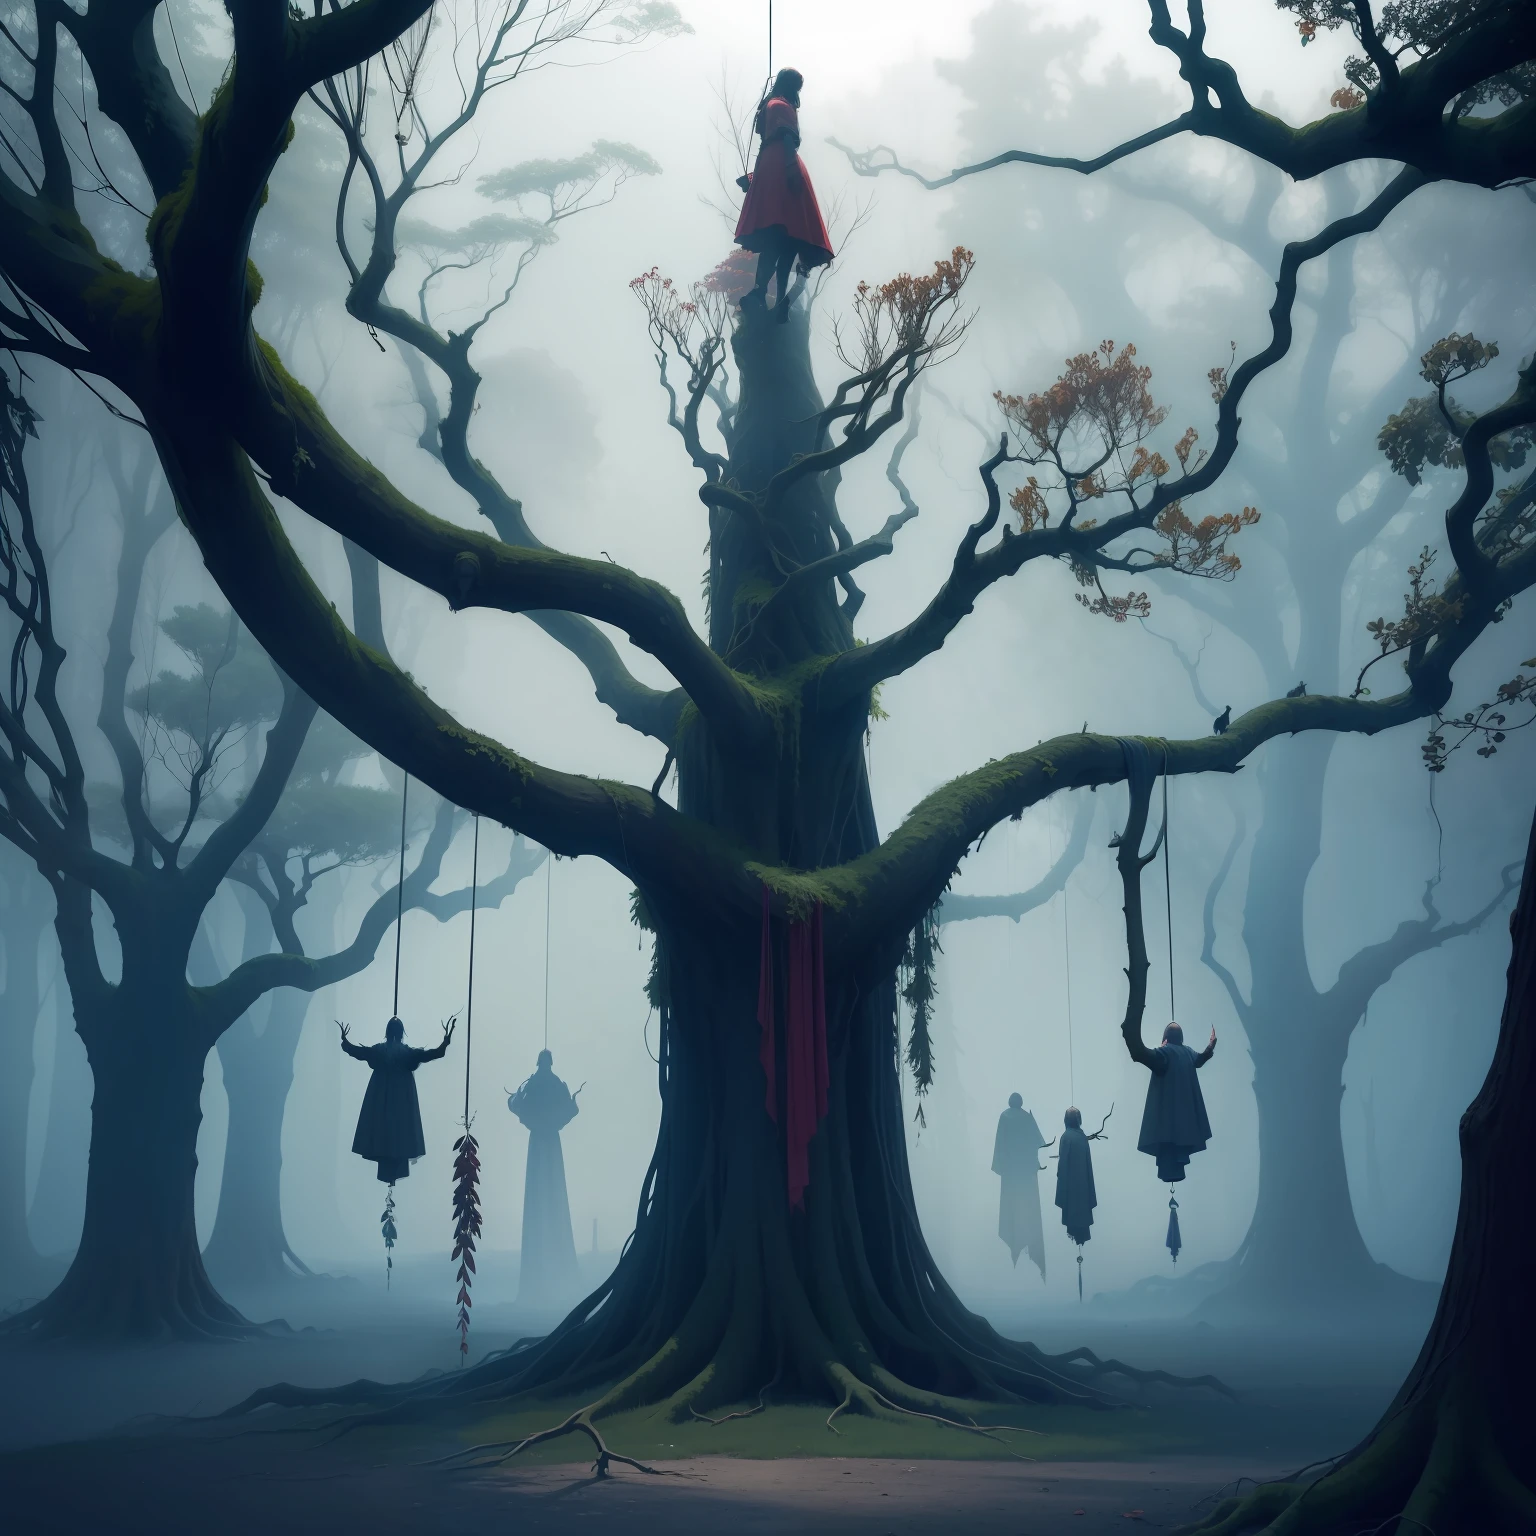 1 дерево много ветвей ((((головы свисают с веток)))), Адское дерево, темная фантазия,